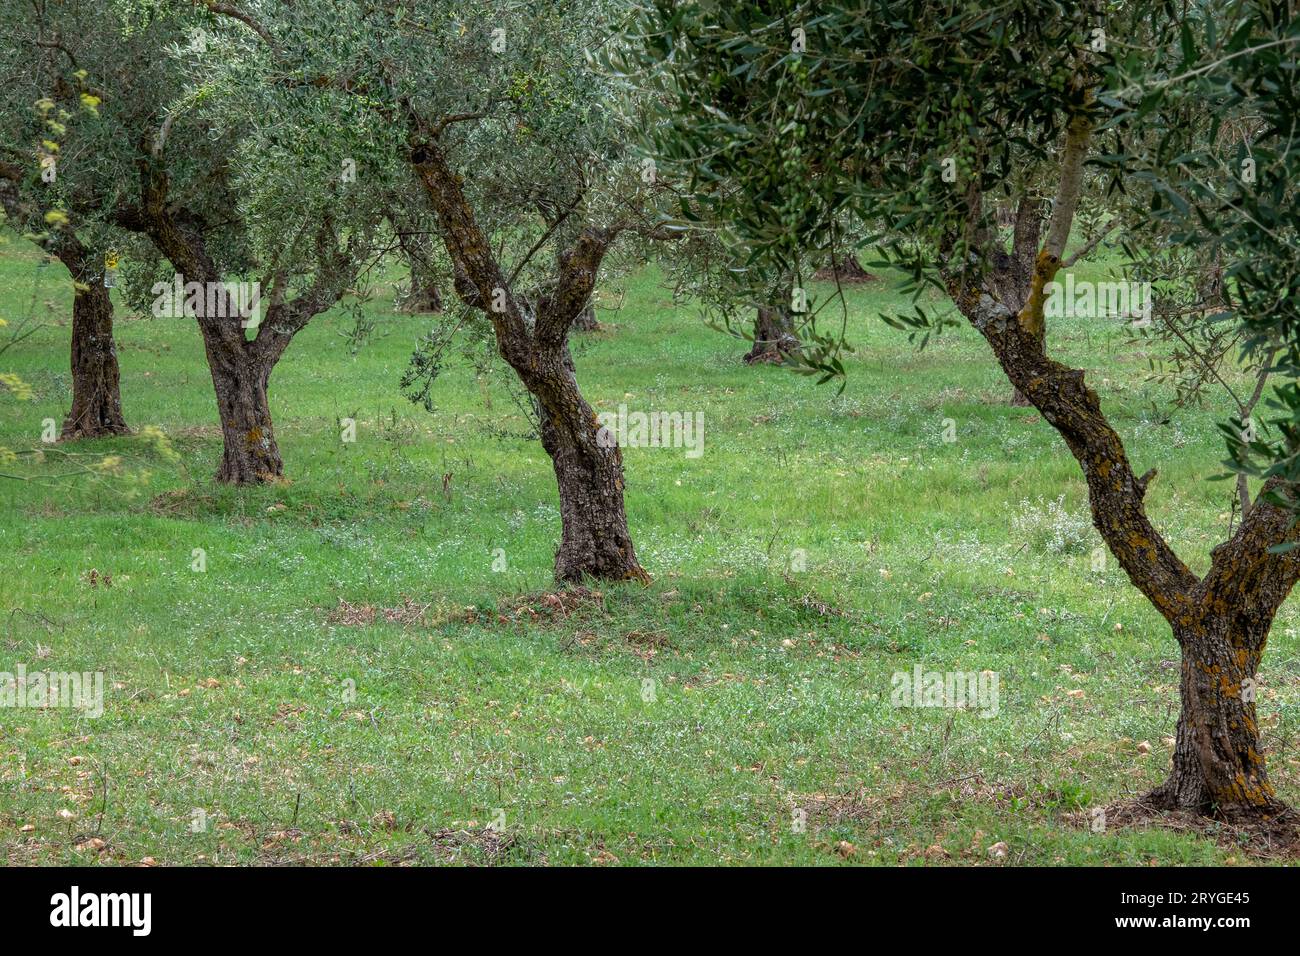 rangée de jeunes oliviers nouvellement plantés dans une oliveraie sur des terres agricoles sur l'île grecque de zante ou zakynthos en grèce. Banque D'Images